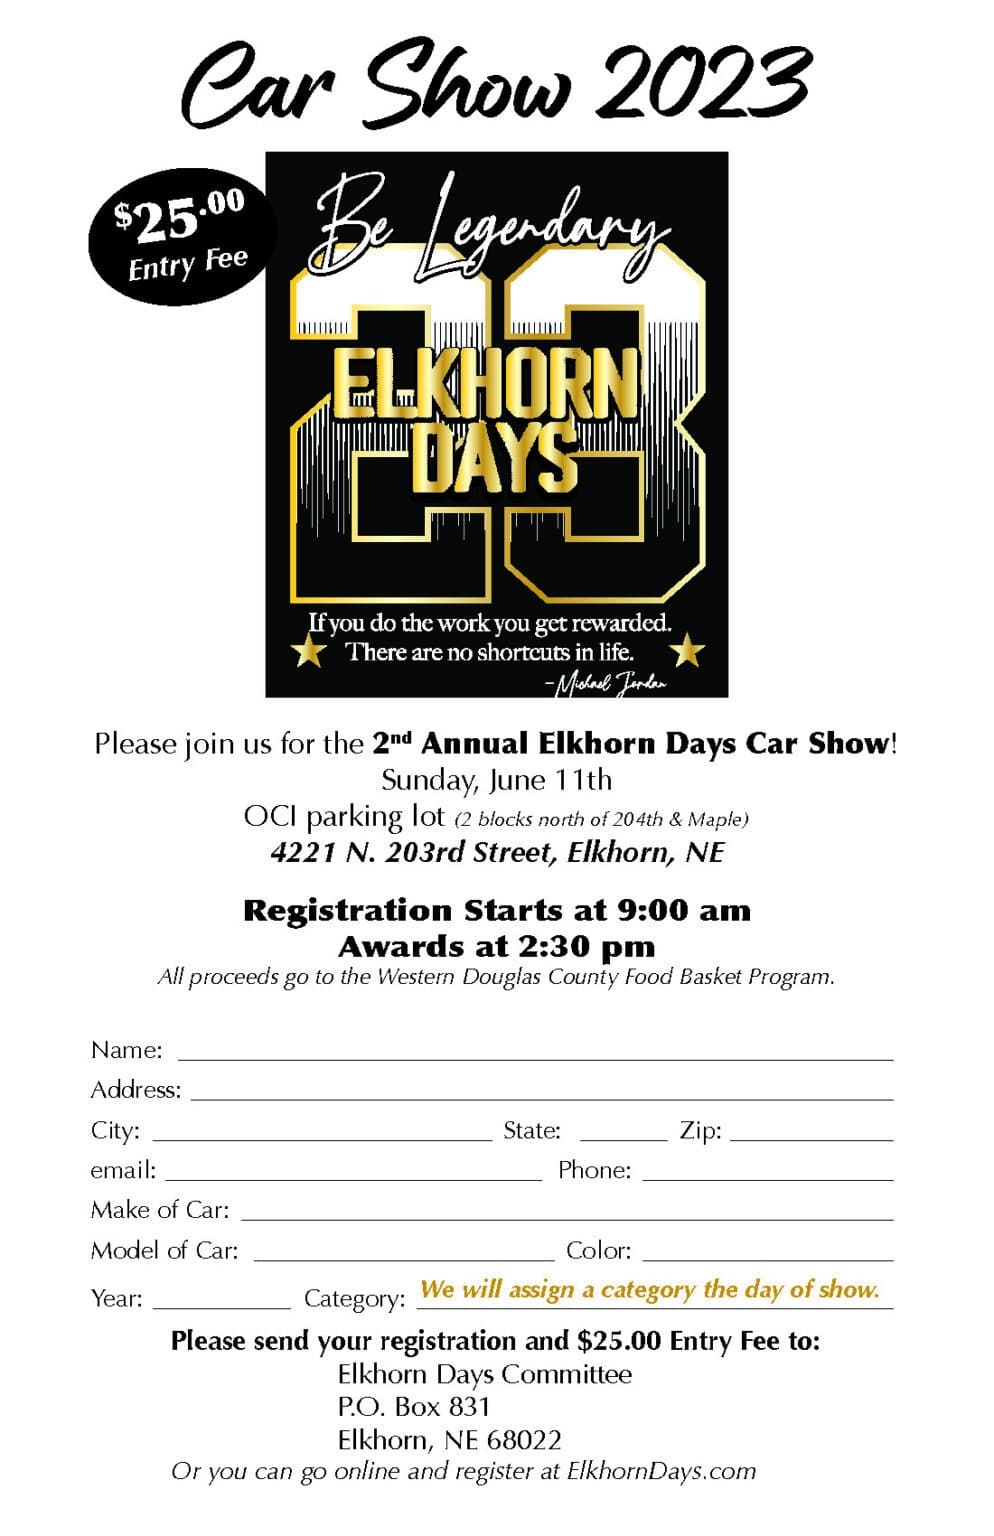 Car Show Elkhorn Days